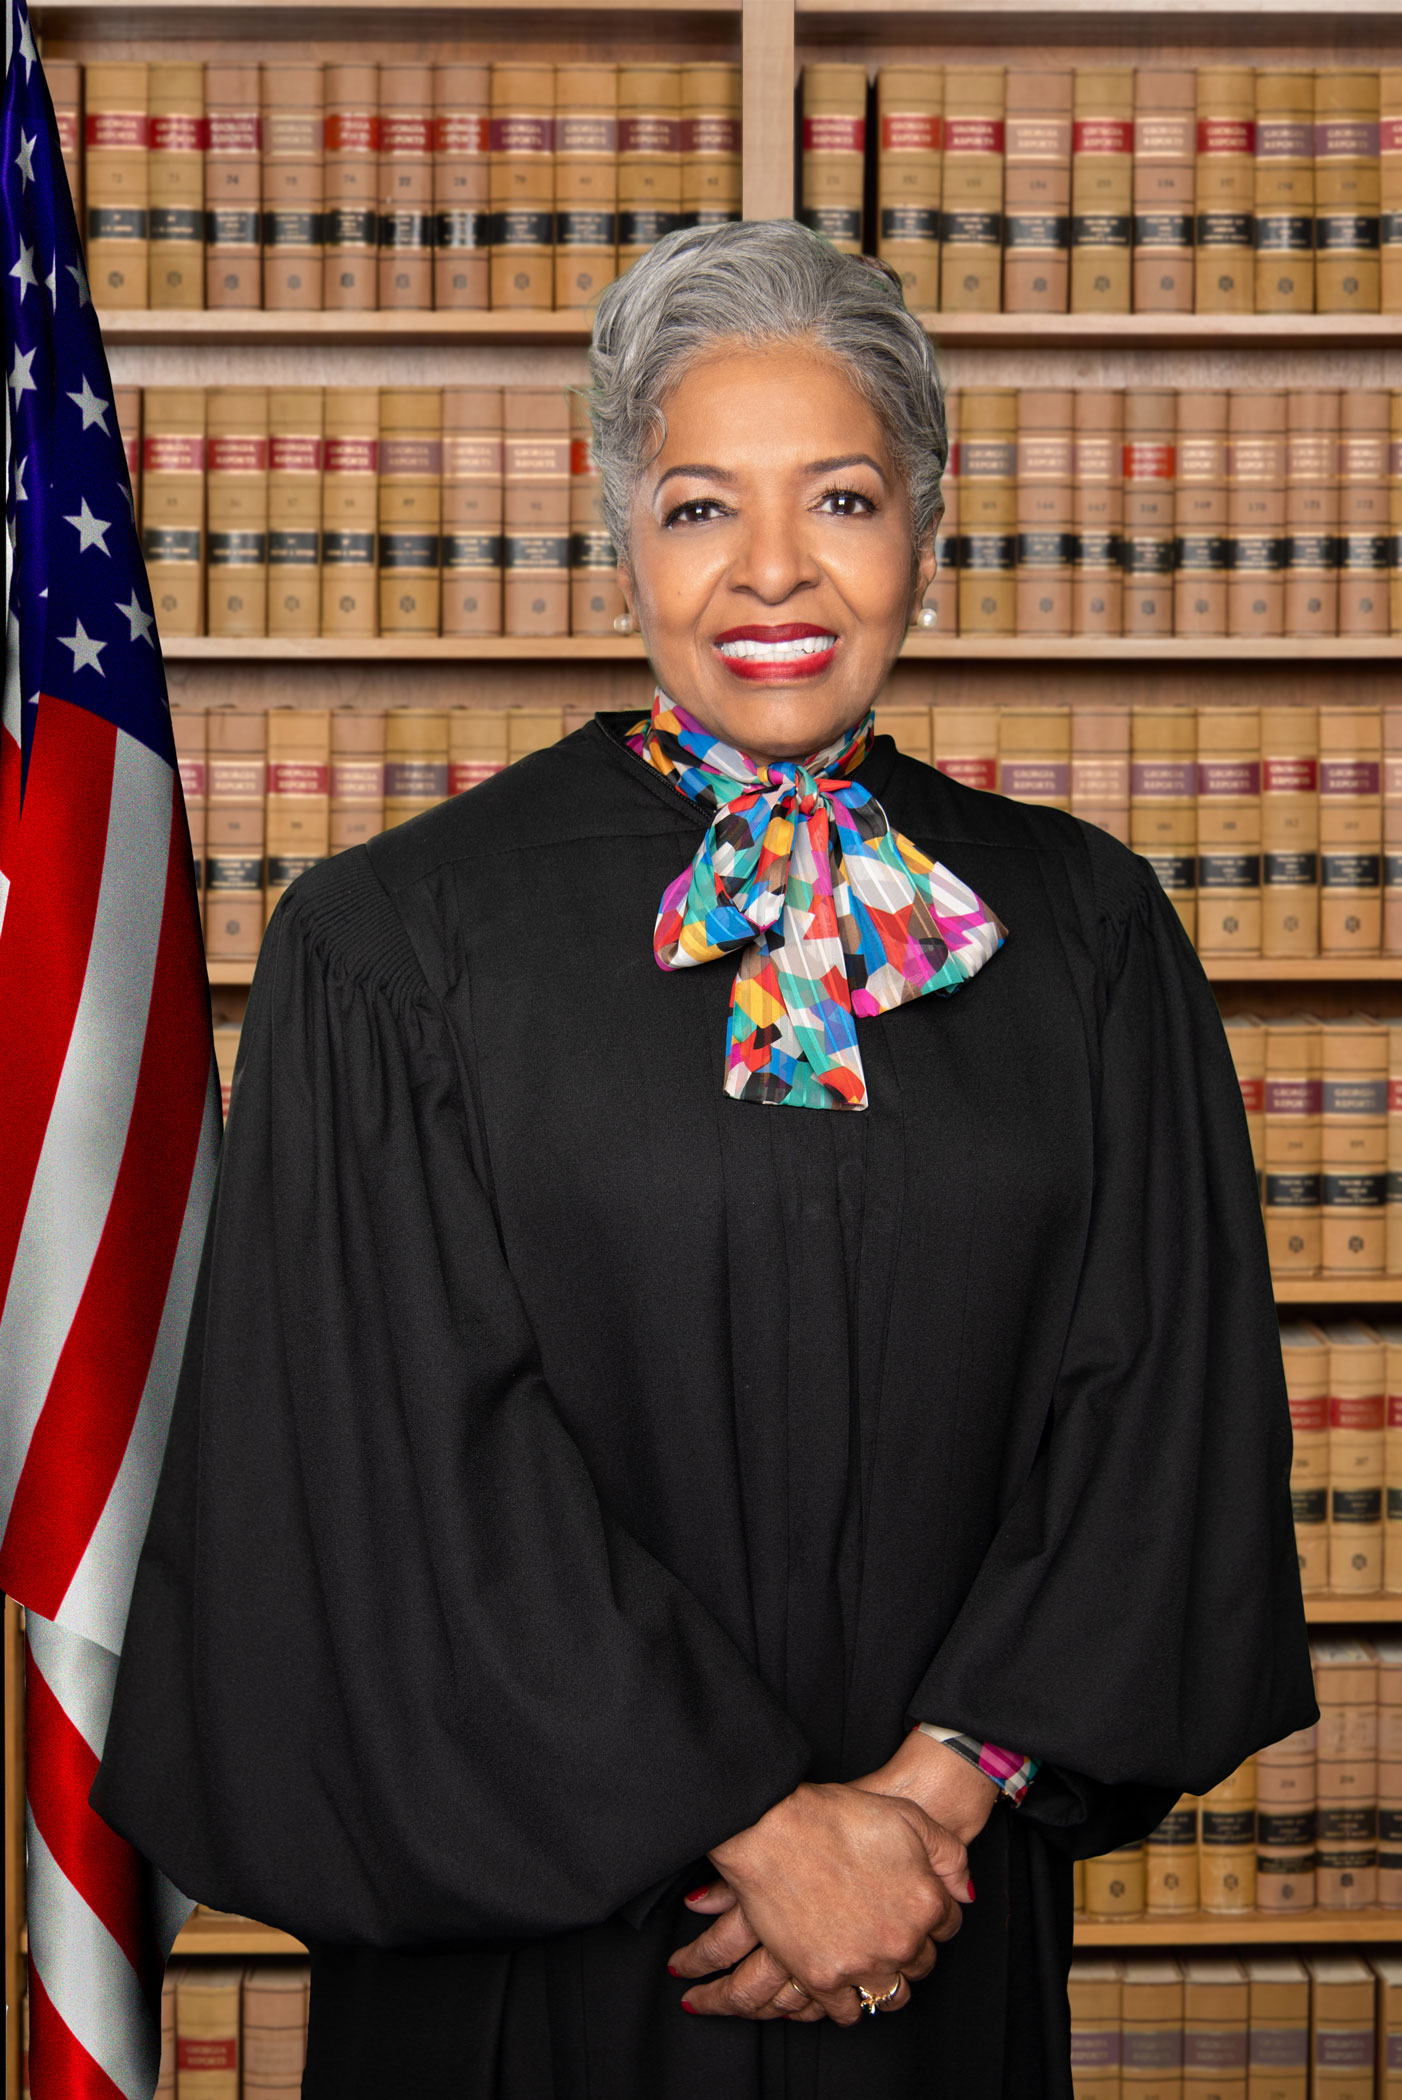 Judge Belinda E. Edwards